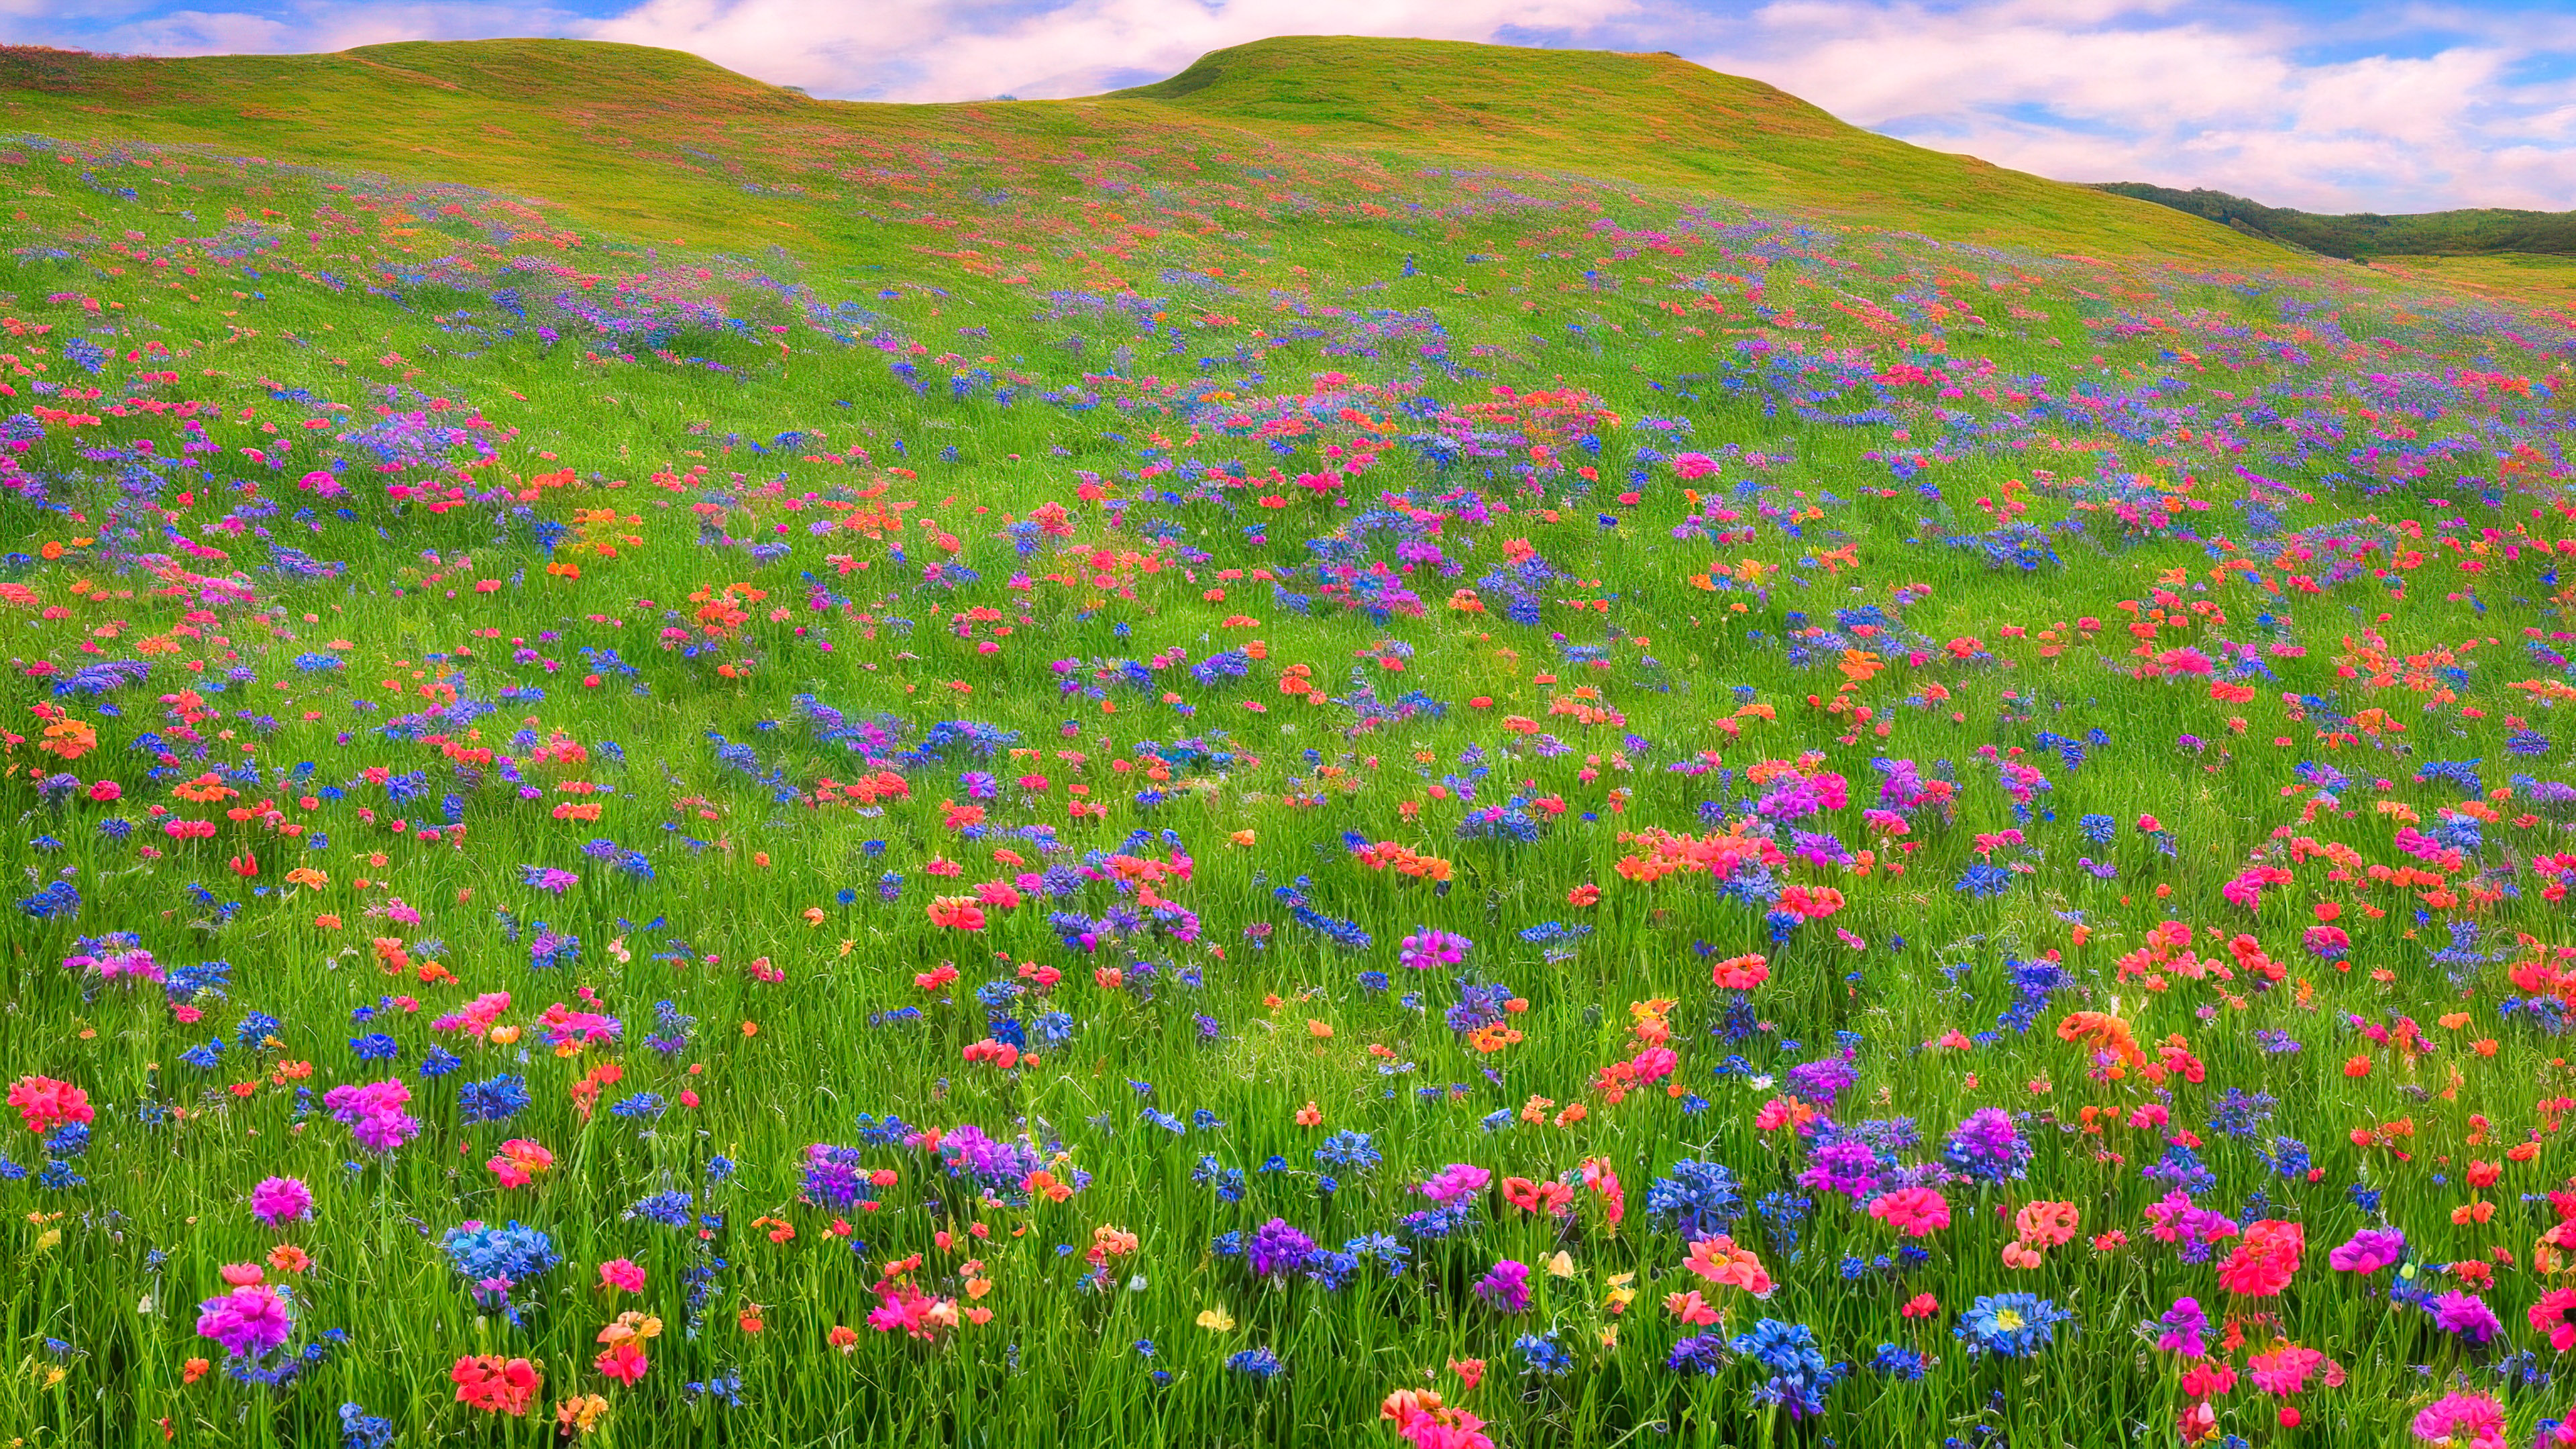 Apercevez la campagne avec notre fond d'écran de paysage, présentant une prairie pittoresque couverte de fleurs sauvages colorées, avec en toile de fond des collines ondulantes.